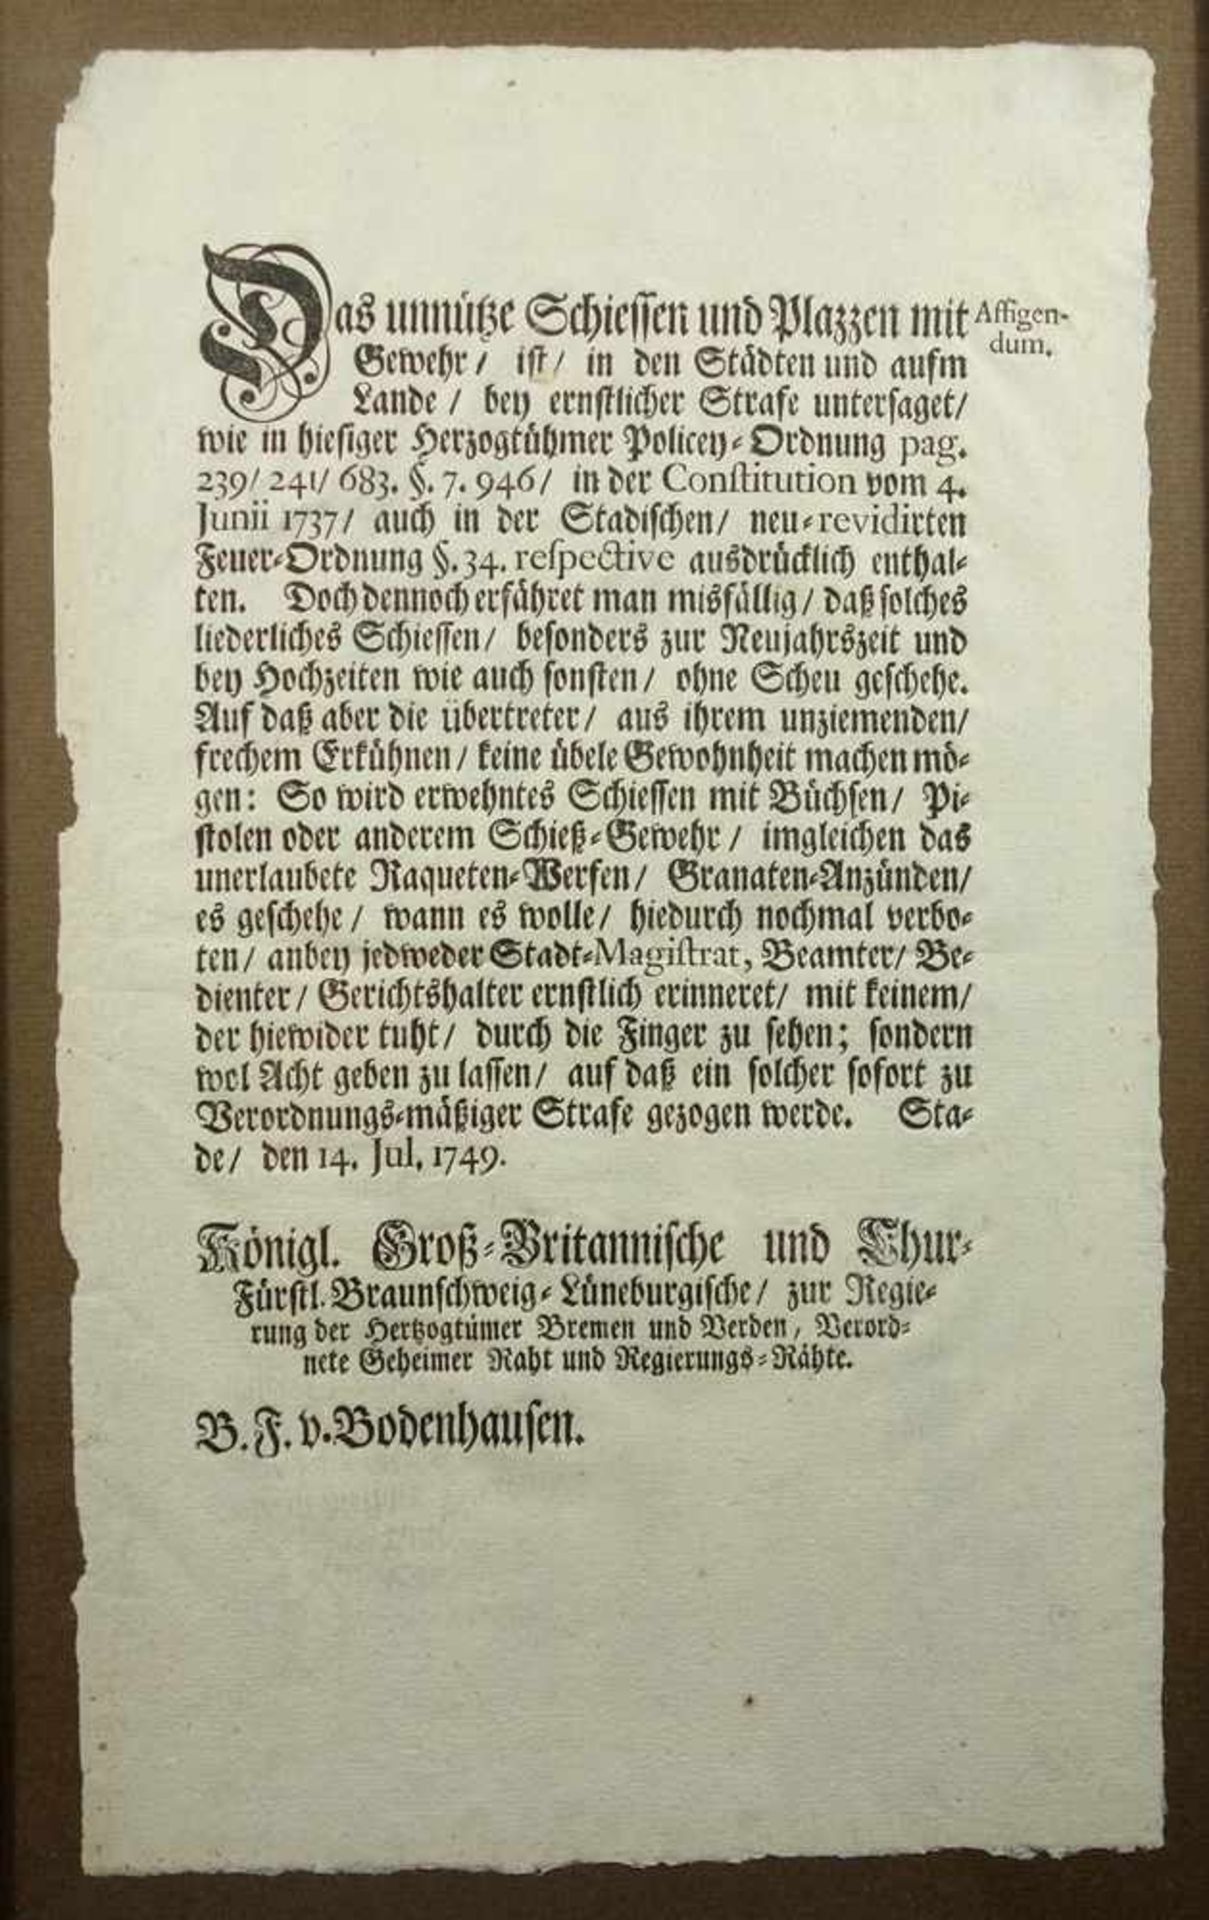 3 Dekrete / Erlässe, Anf. 19. Jh. u.a. aus dem Raum Bremen: 1. Verbot von Schützenfesten oder